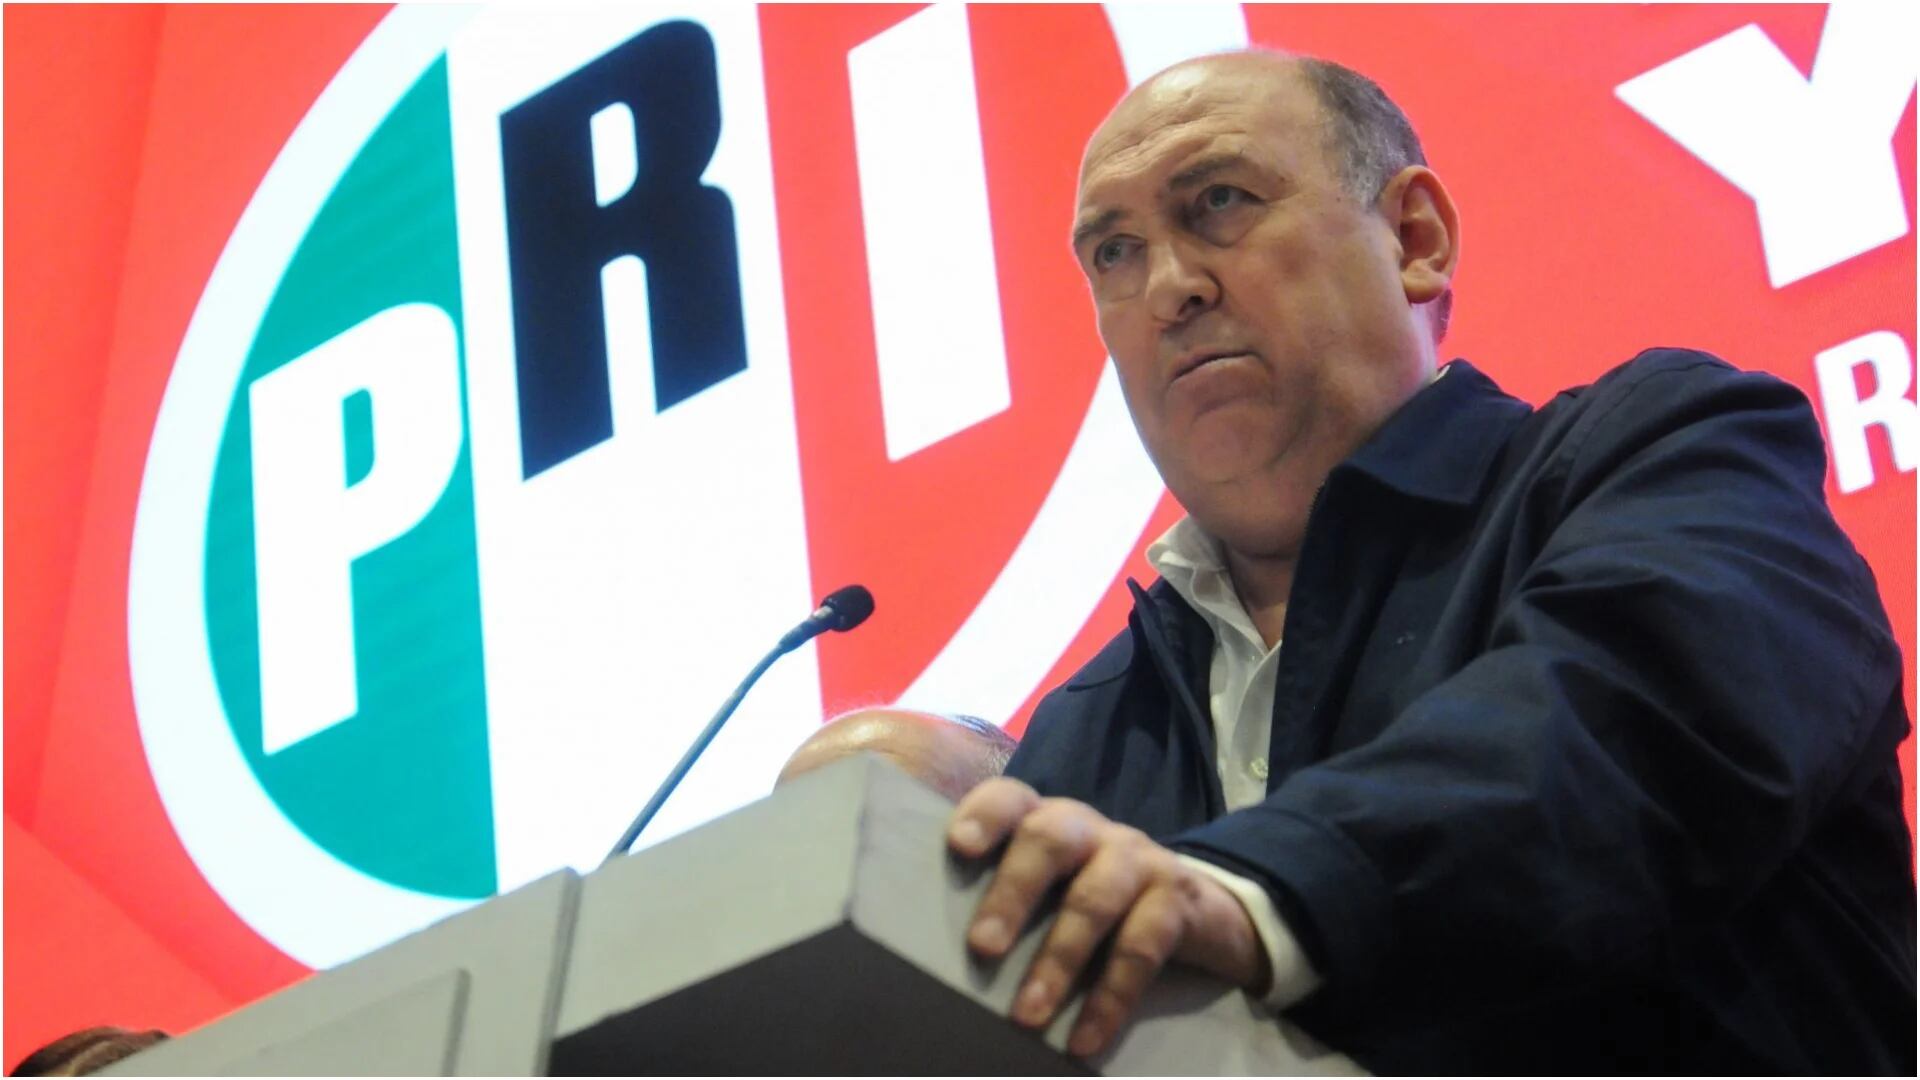 El líder del PRI en la Cámara de Diputados reaccionó a la salida de Jorge Carlos Ramírez Marín del tricolor (Cuartoscuro)